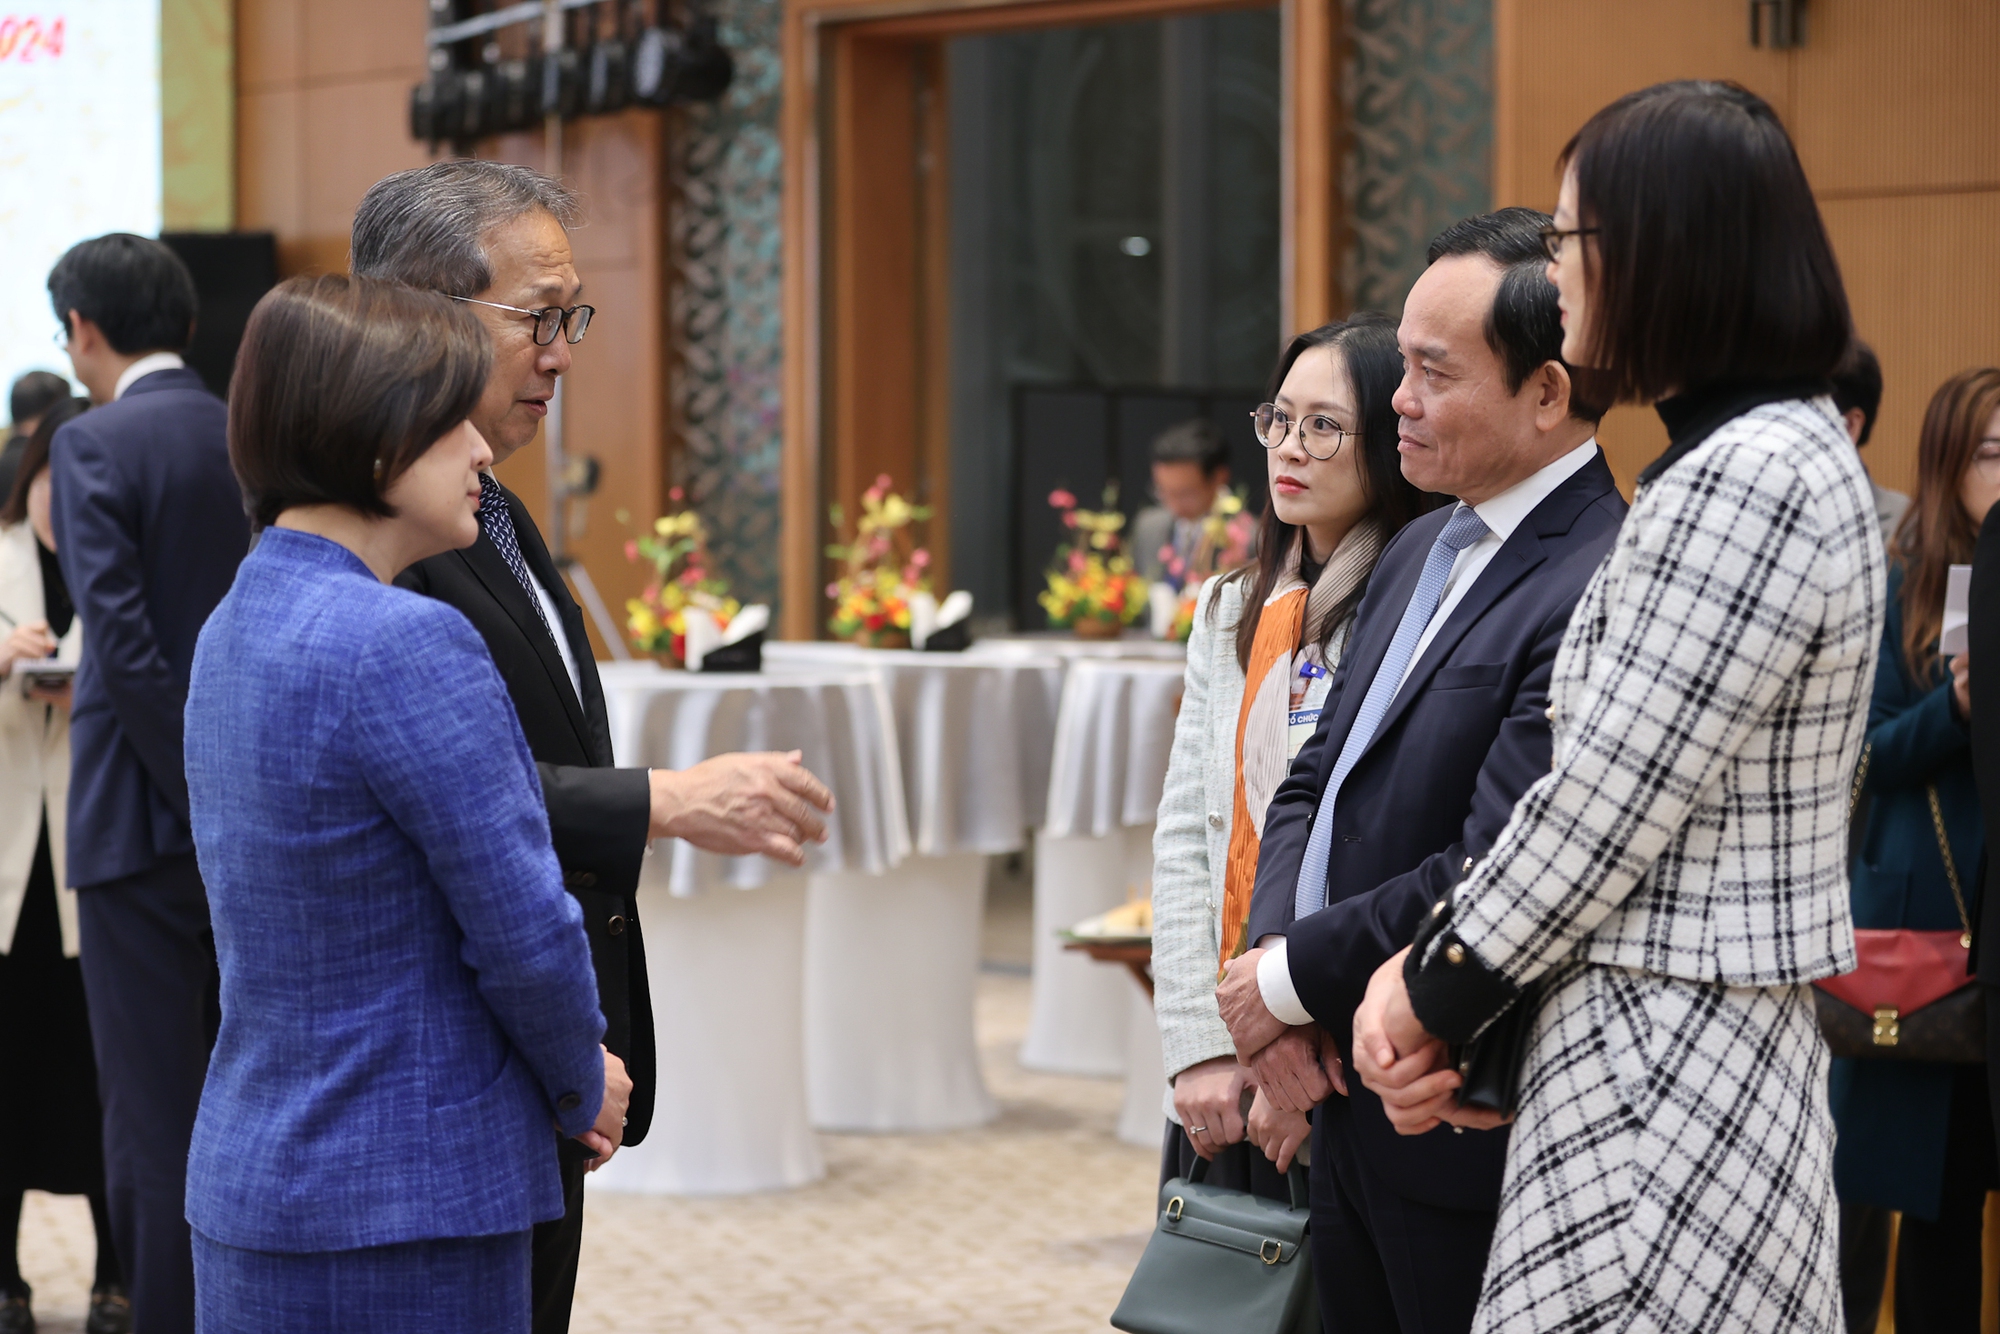 Thủ tướng Phạm Minh Chính: Thúc đẩy đoàn kết và hợp tác quốc tế là giải pháp nền tảng